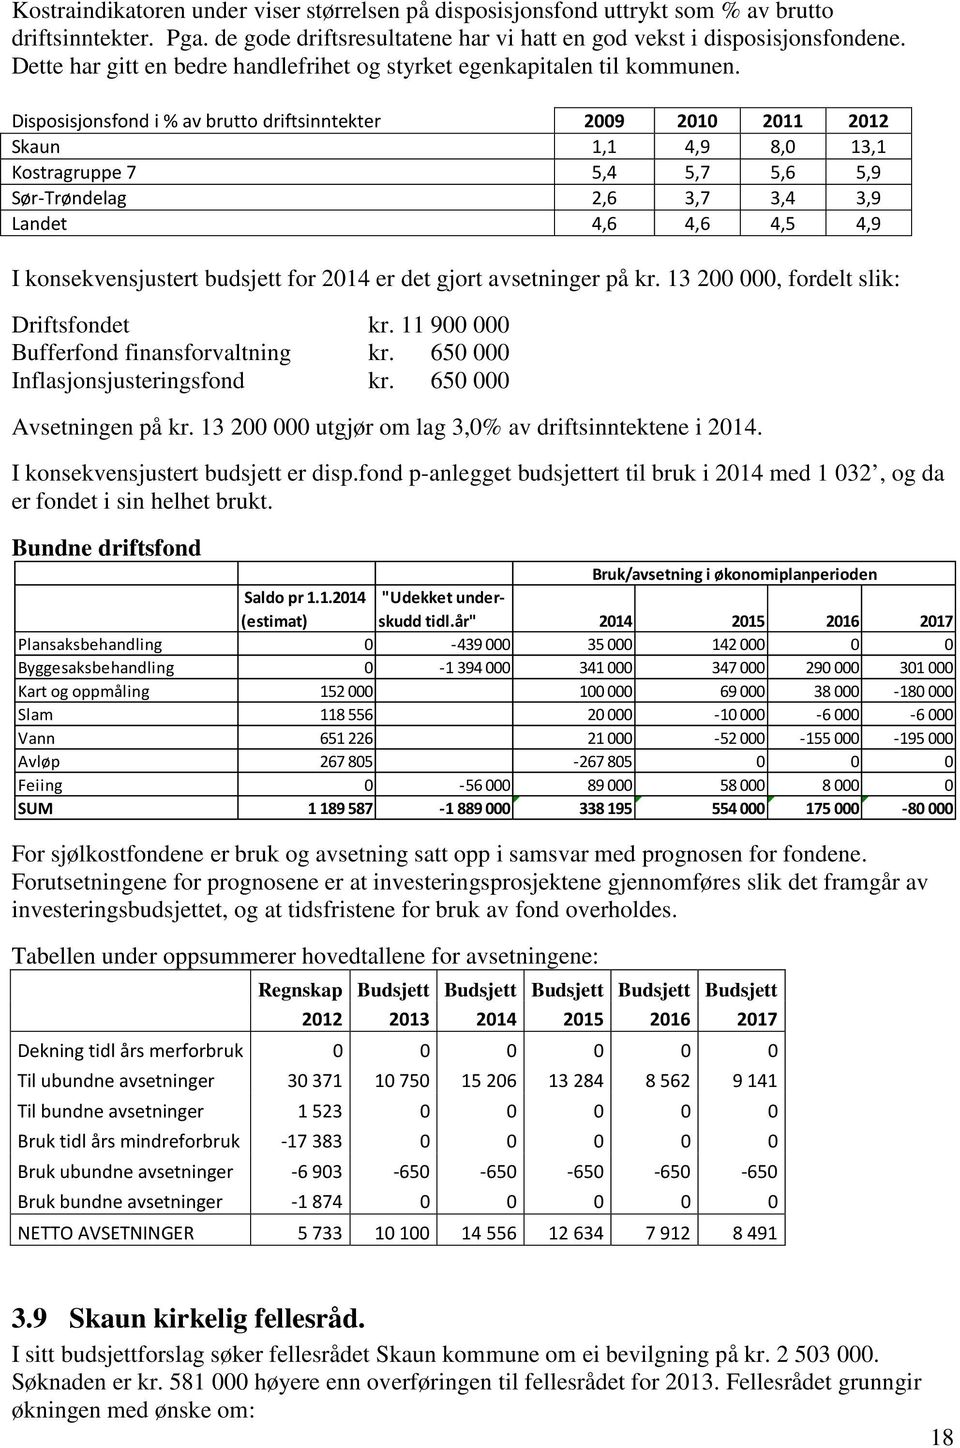 Disposisjonsfond i % av brutto driftsinntekter 2009 2010 2011 2012 Skaun 1,1 4,9 8,0 13,1 Kostragruppe 7 5,4 5,7 5,6 5,9 Sør-Trøndelag 2,6 3,7 3,4 3,9 Landet 4,6 4,6 4,5 4,9 I konsekvensjustert